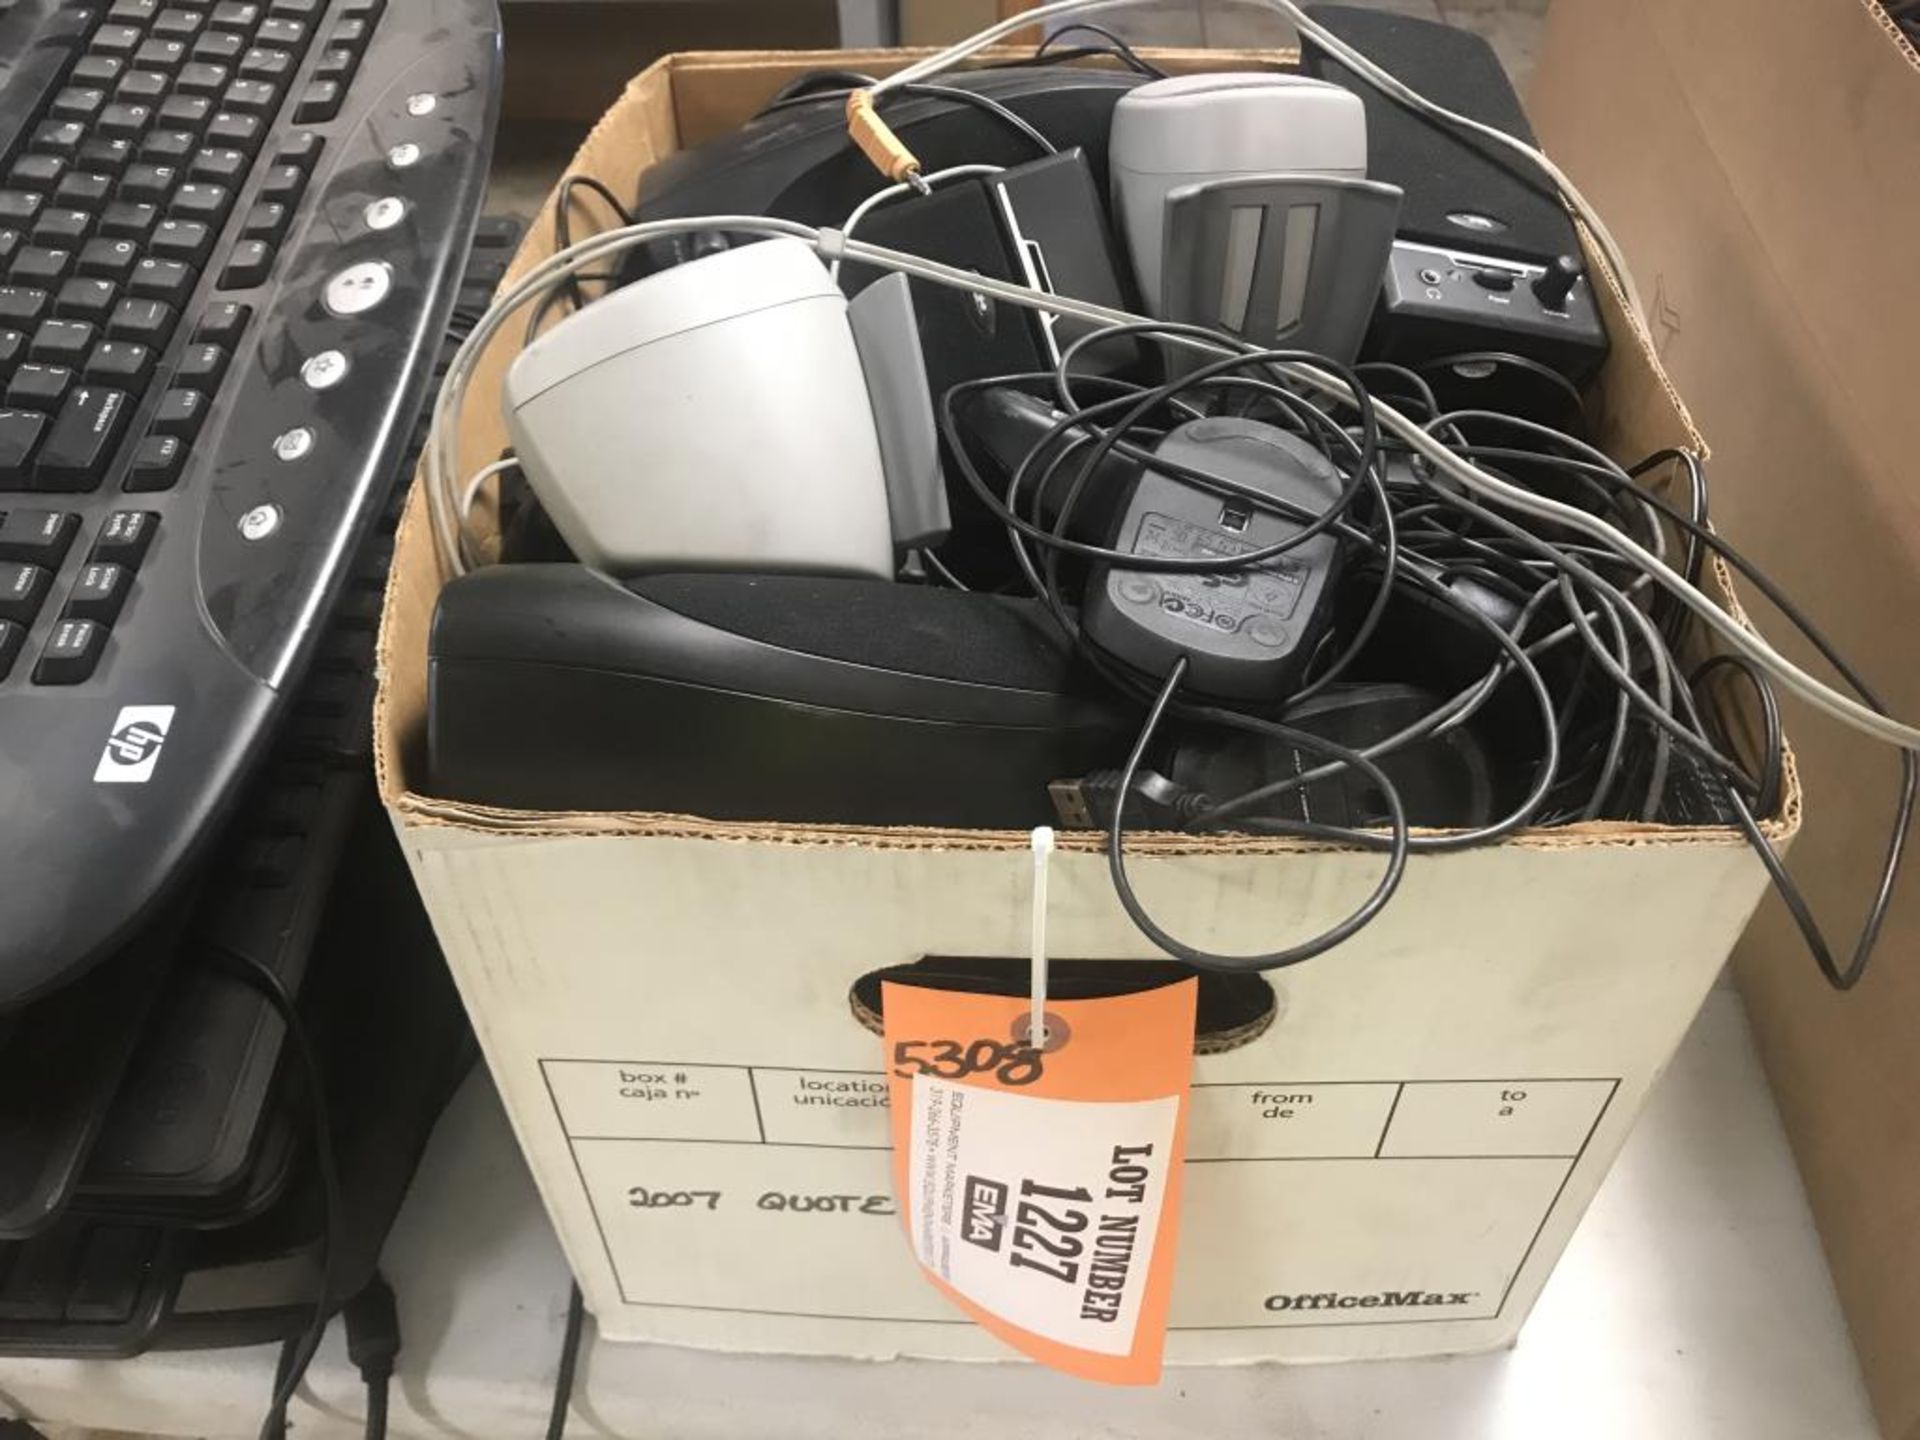 Computer supplies